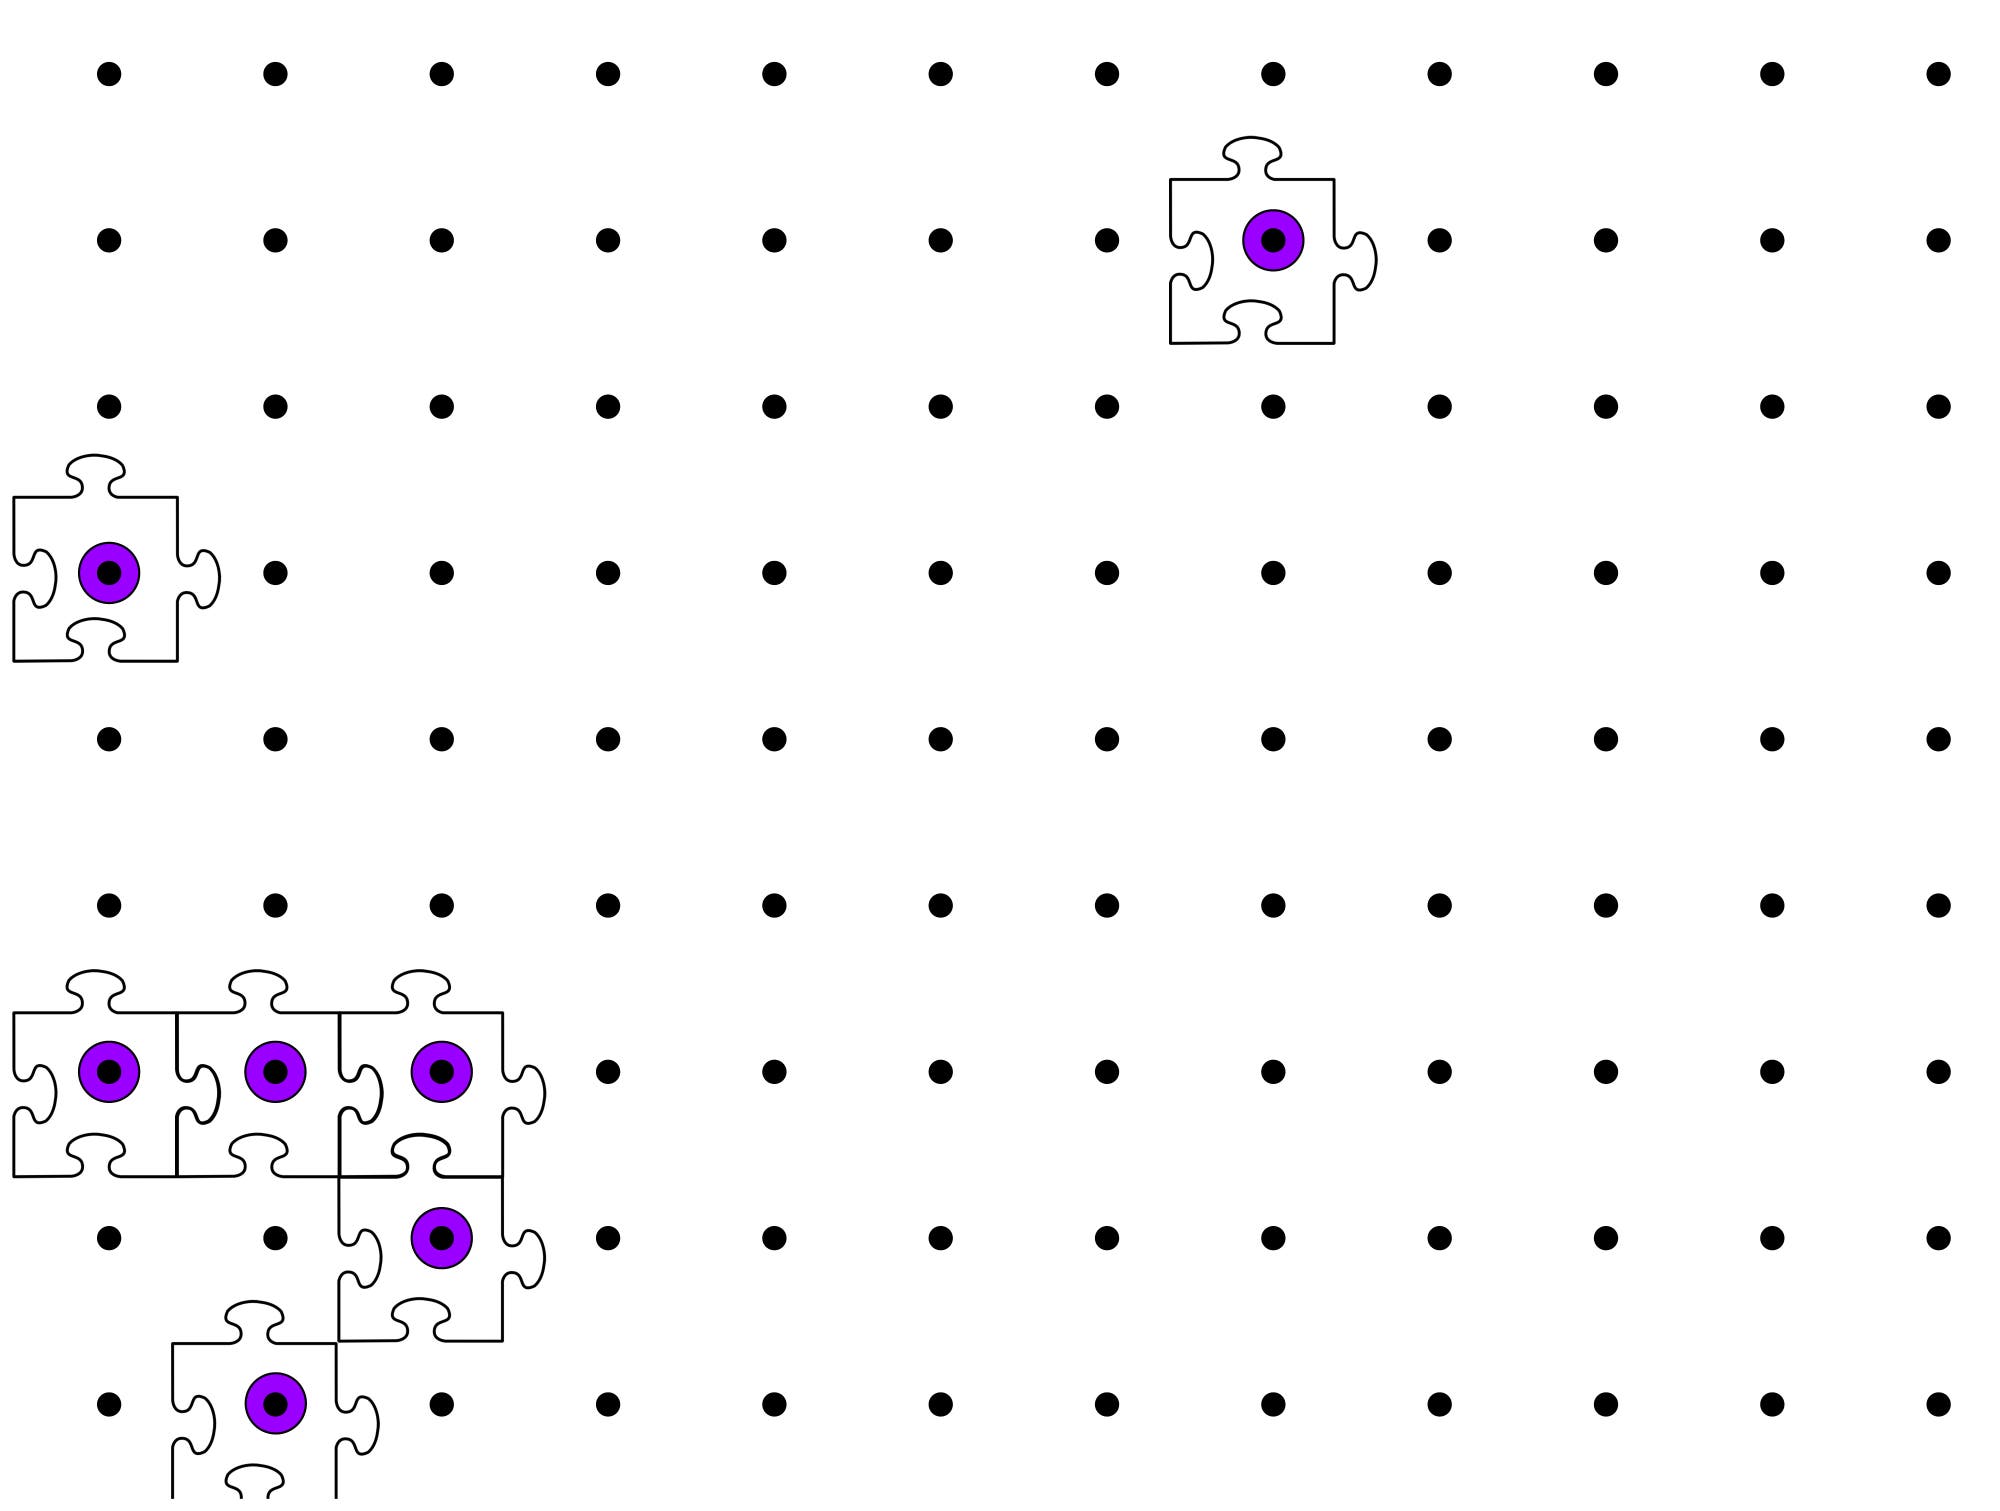 Punkte in einem quadratischen Gitter, einige davon sind von Puzzleteilen umgeben.